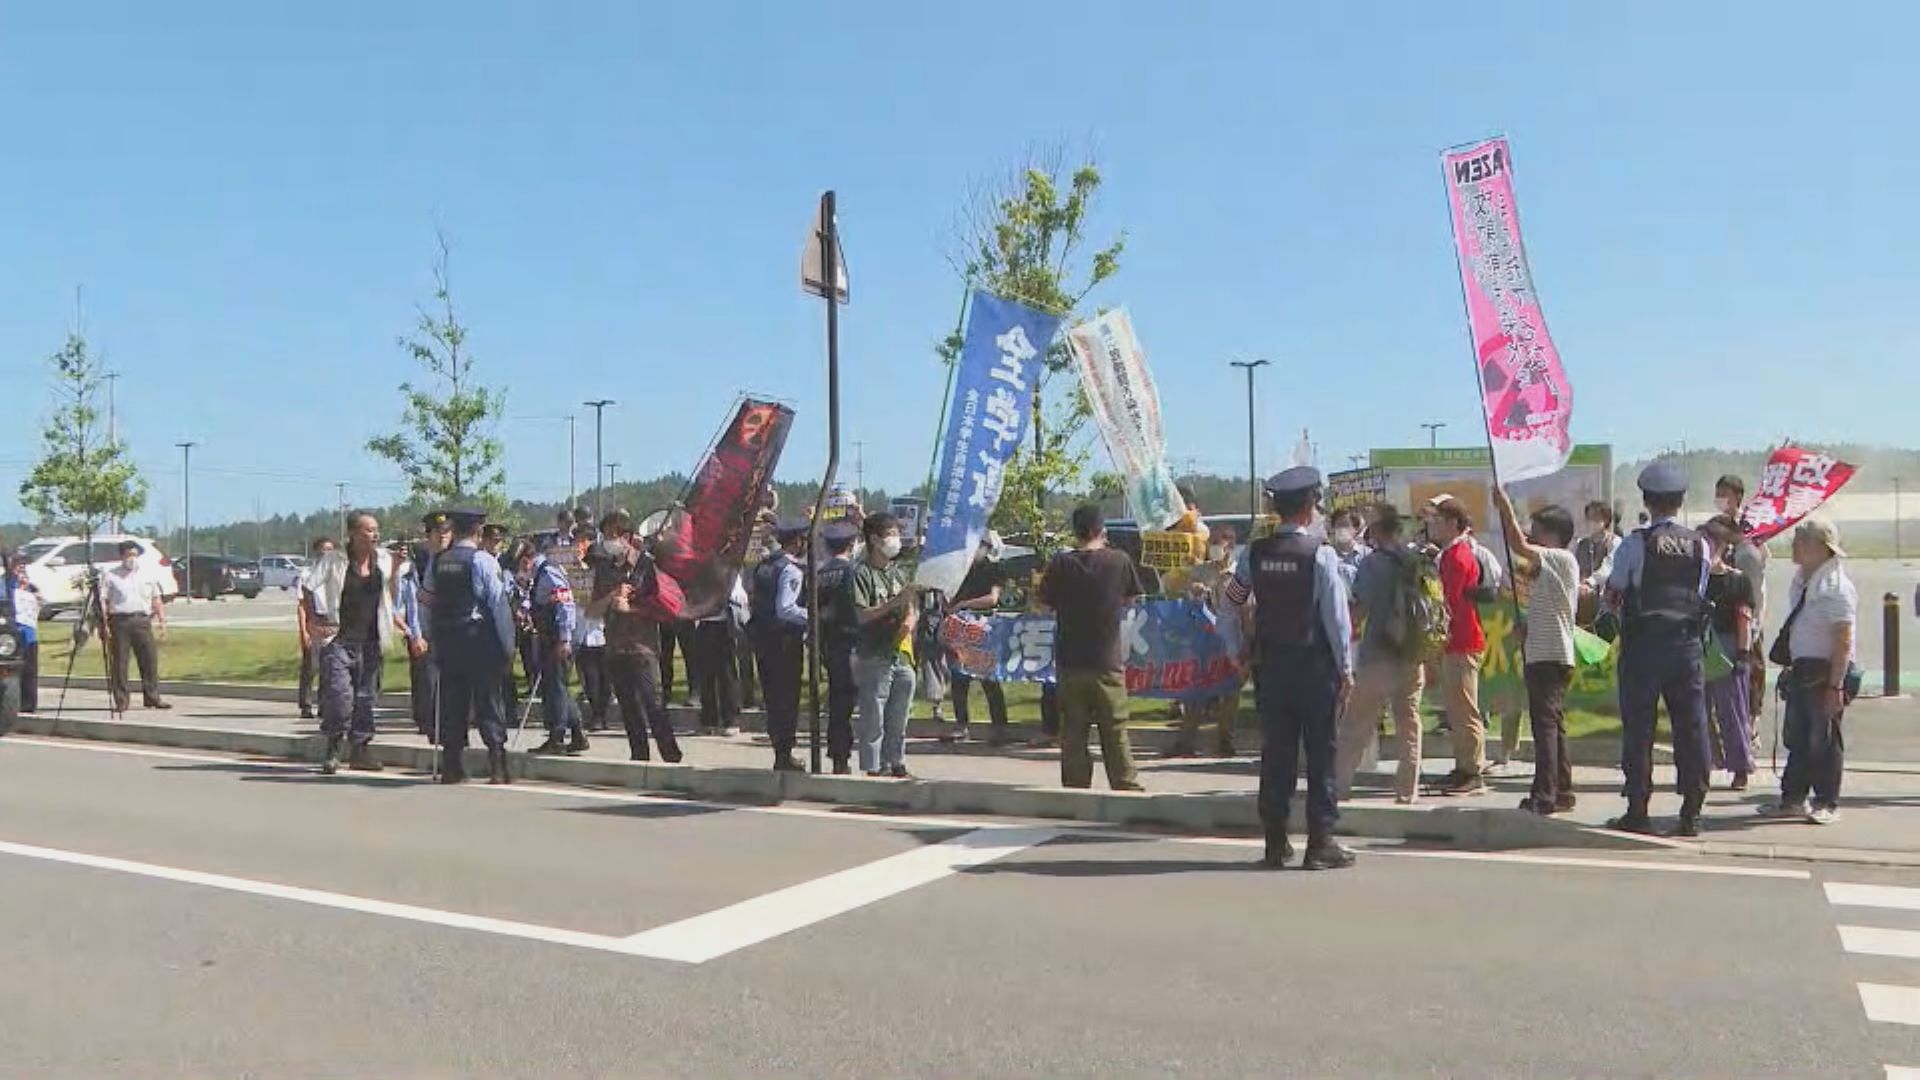 【福島直擊】雙葉町示威抗議核污水排海 民眾批政府一意孤行阻復興